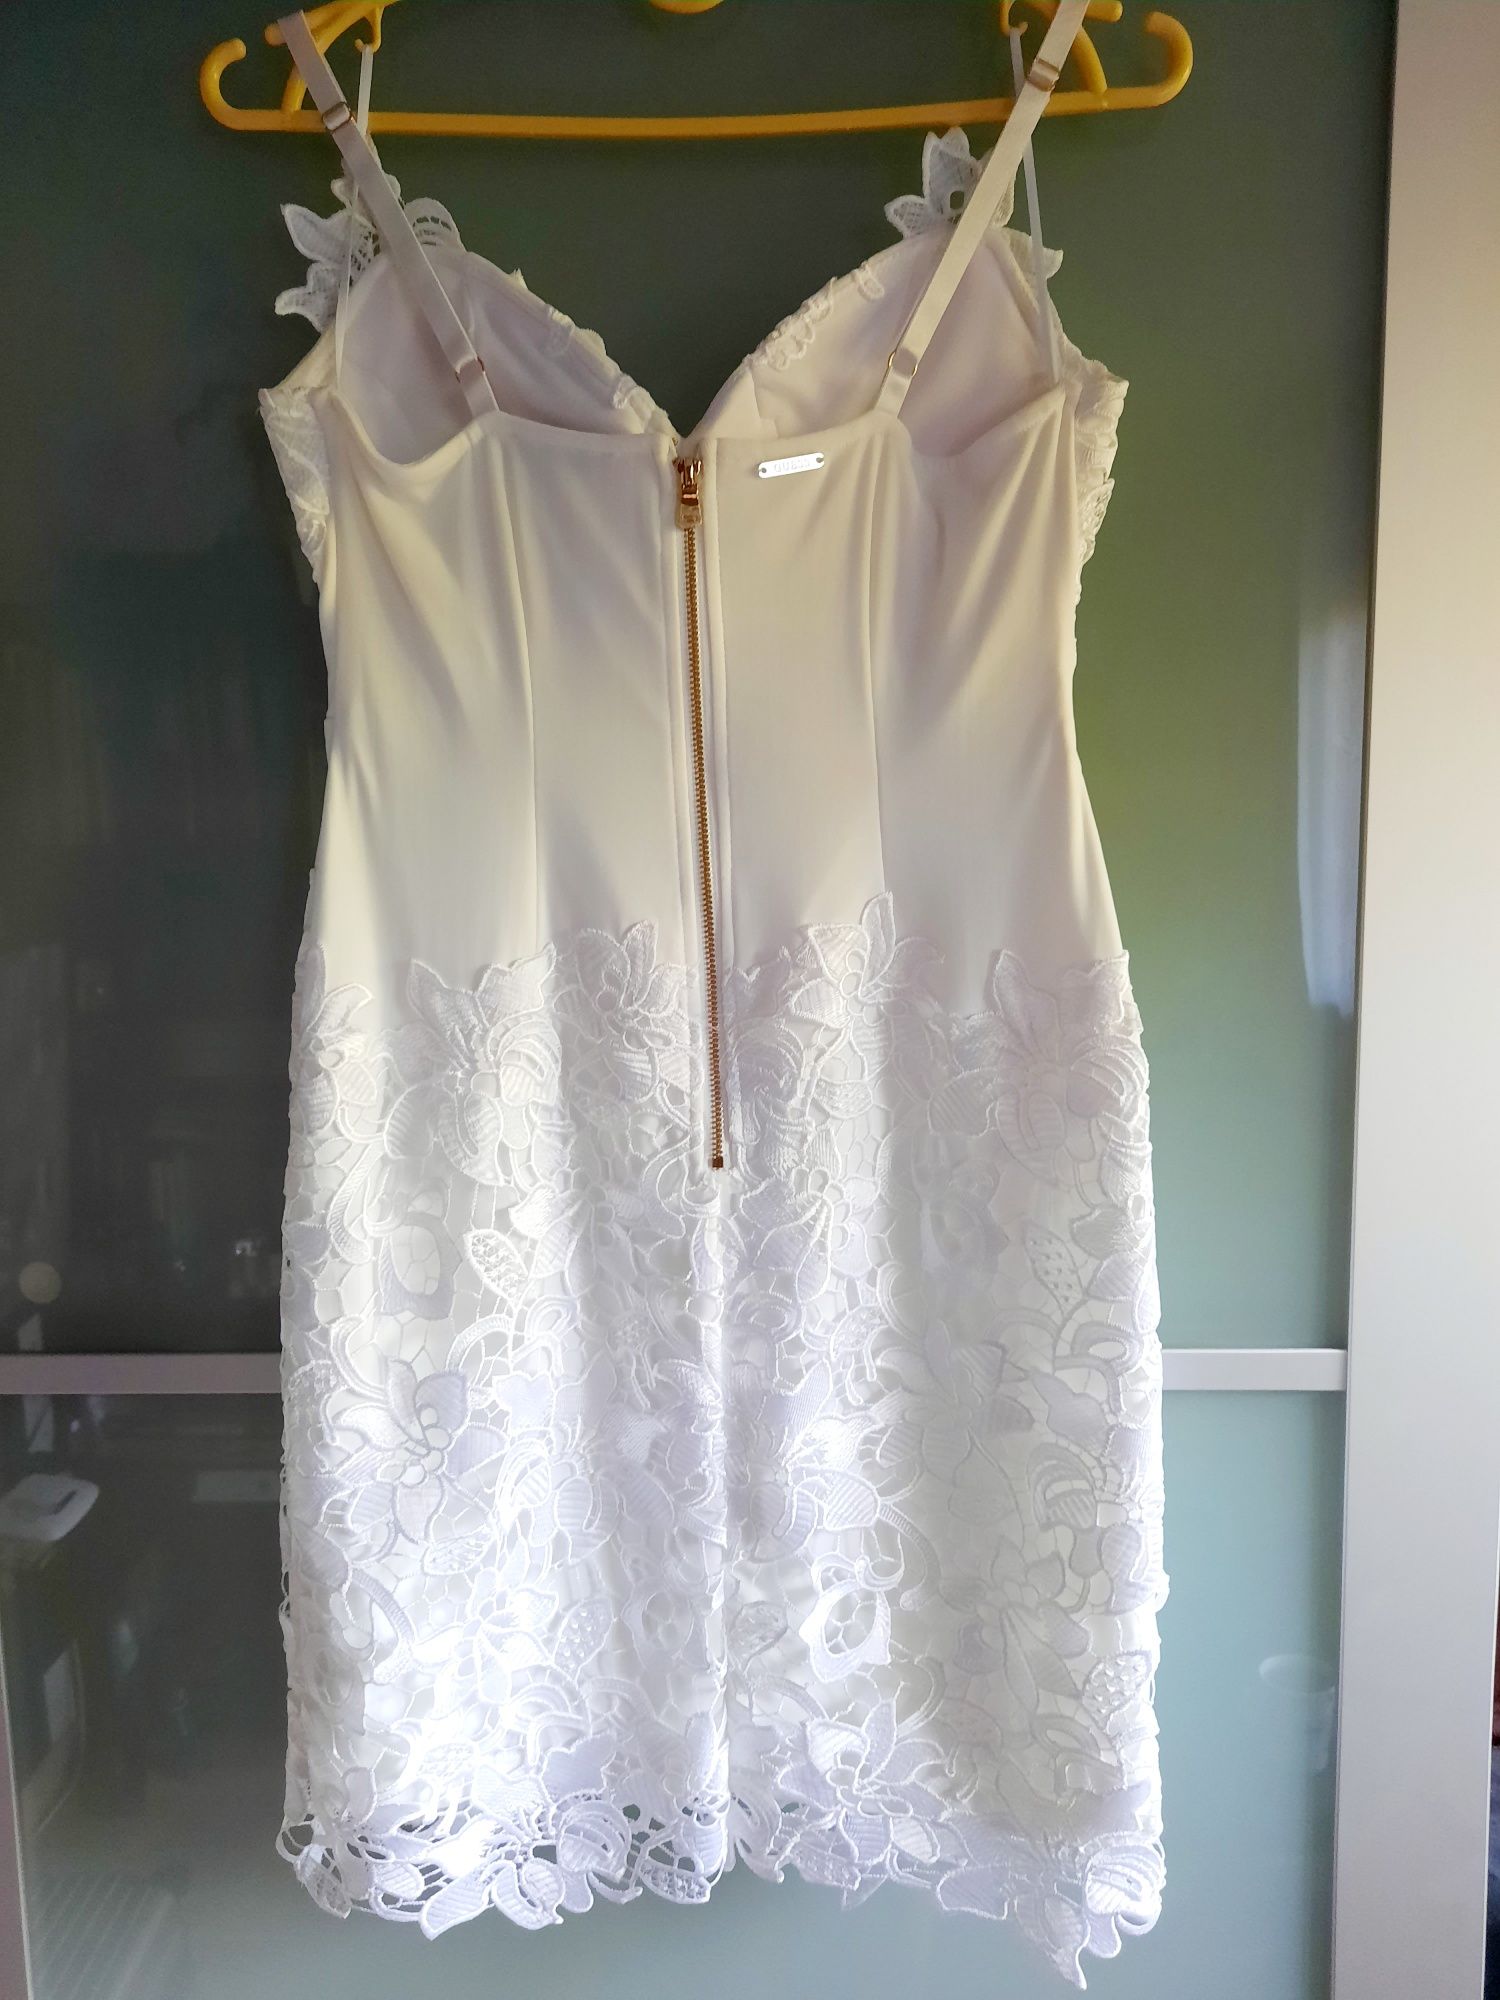 Guess sukienka Marciano biała biel koronka kwiaty 36 S